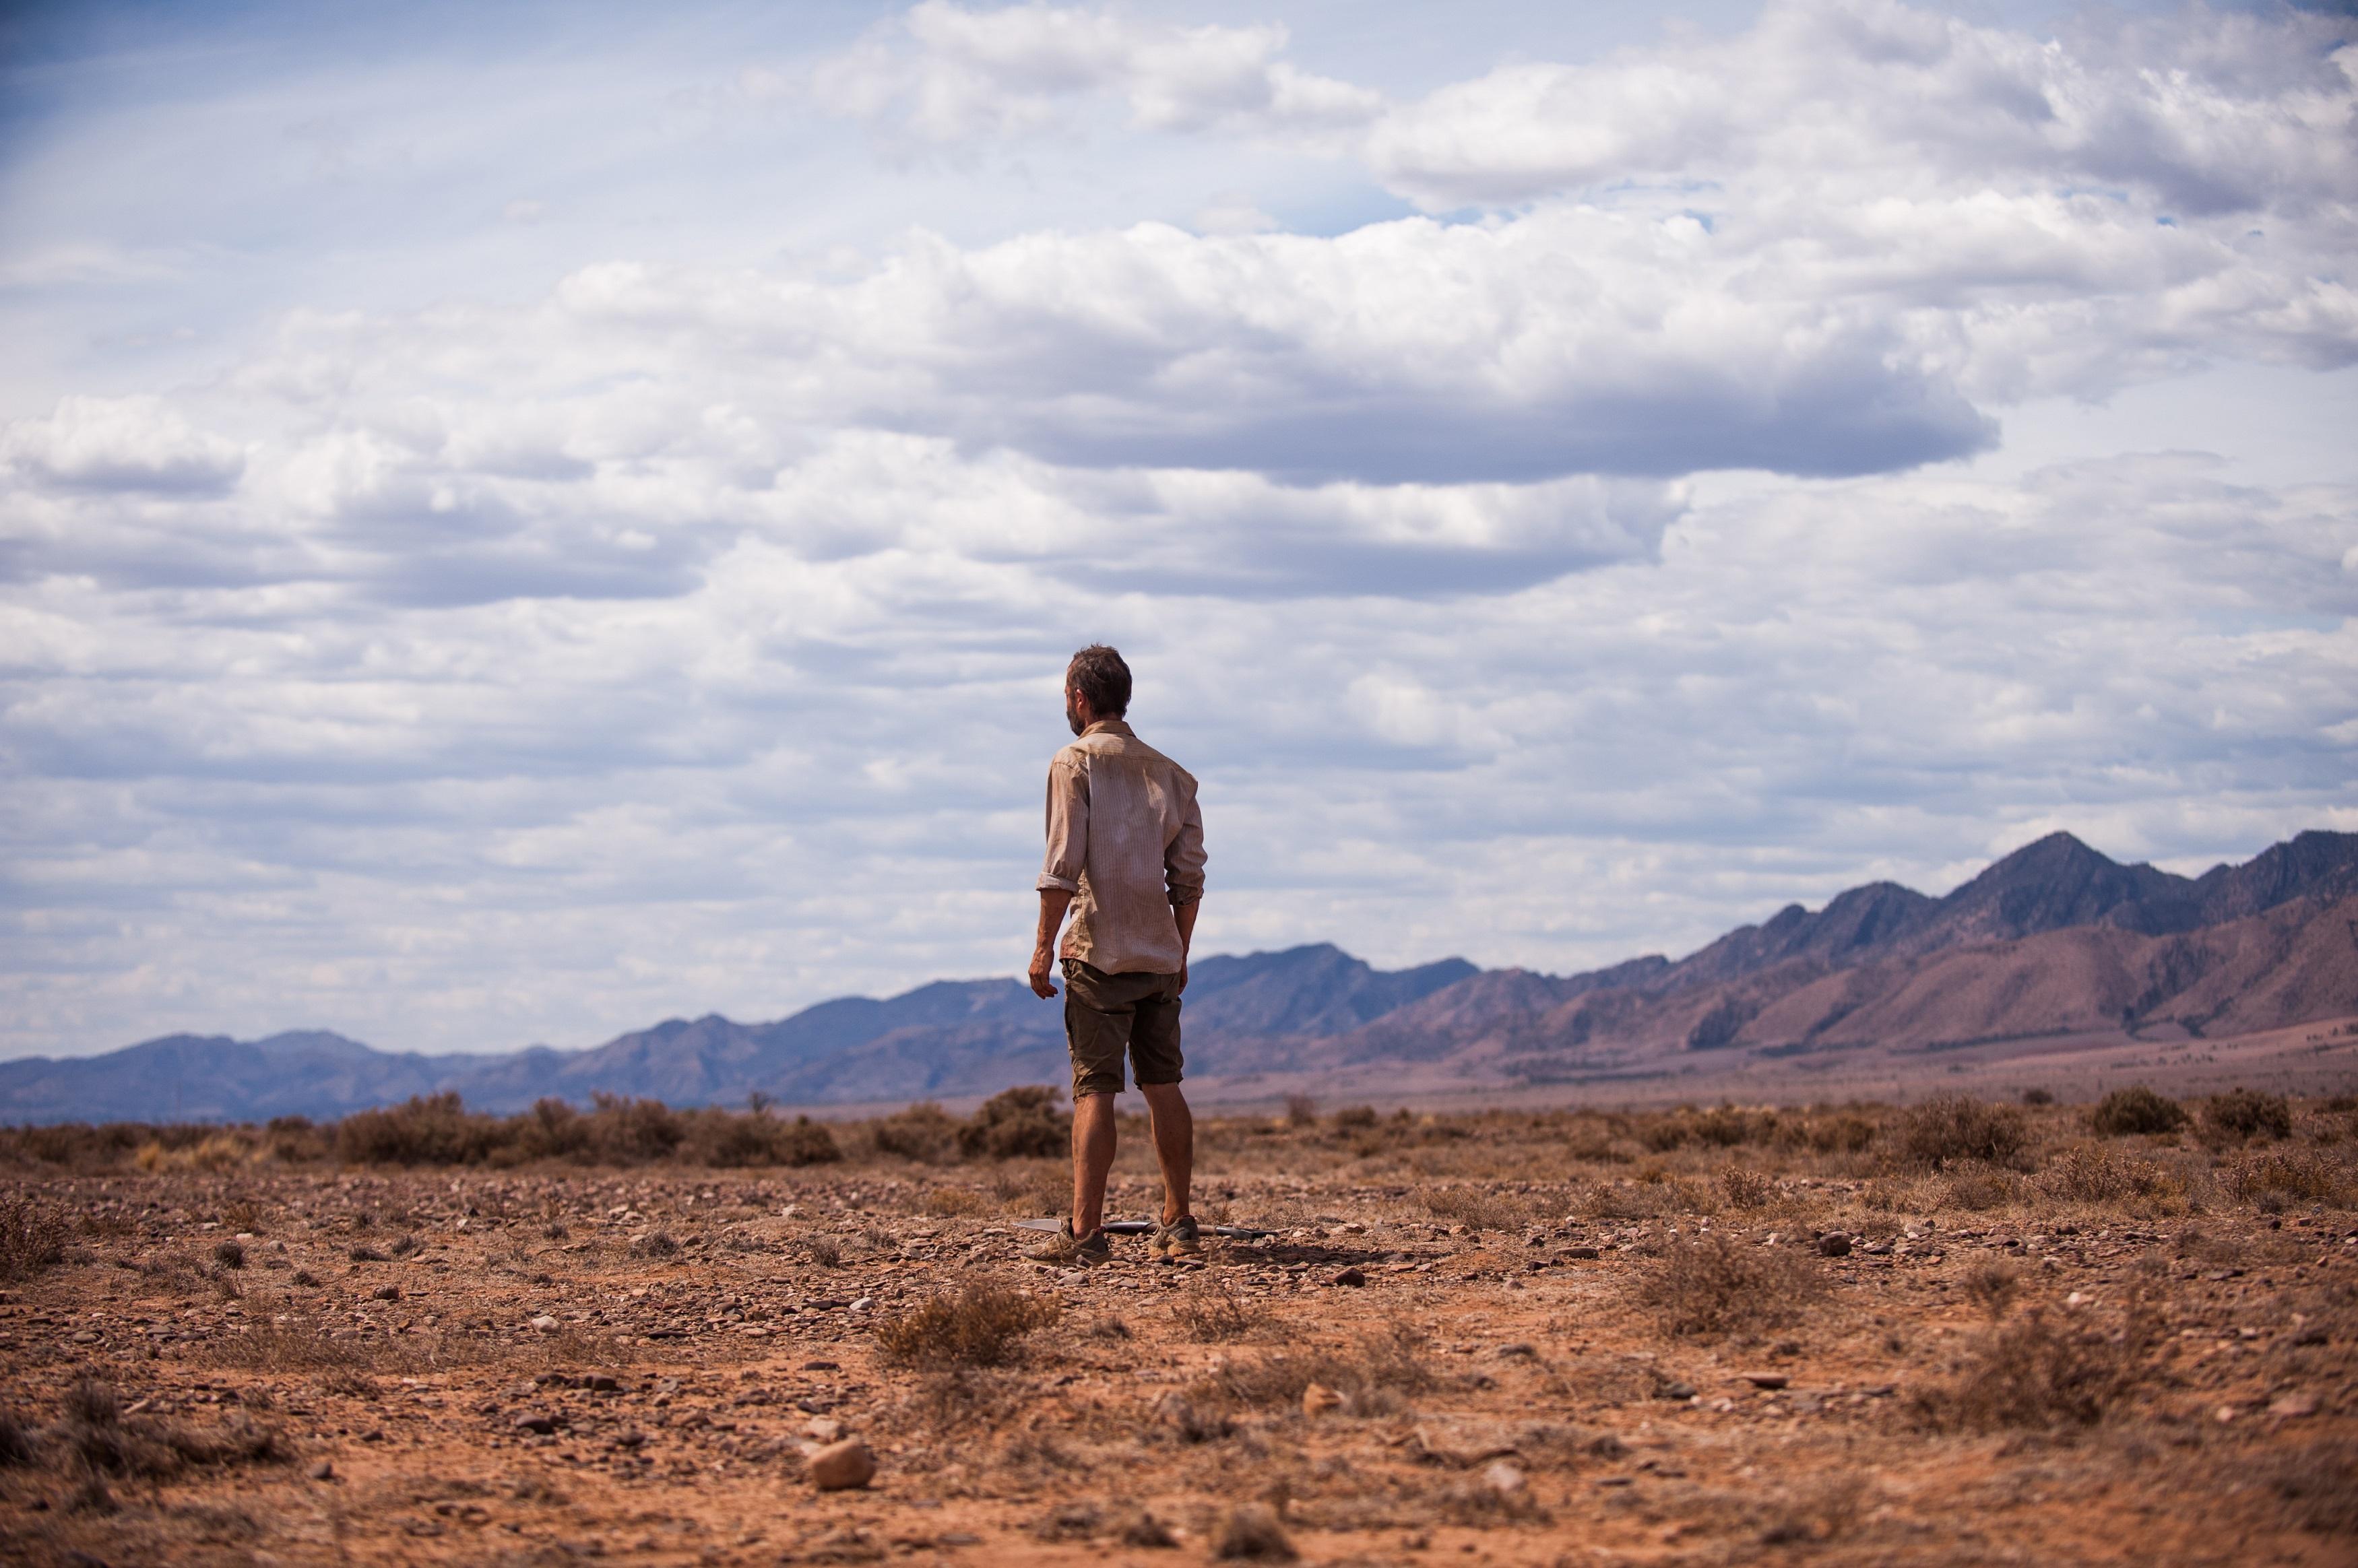 Иди мен. Rover 2014 guy Pearce. Человек один в пустыне. Одиночество в пустыне. Мужчина в пустыне.